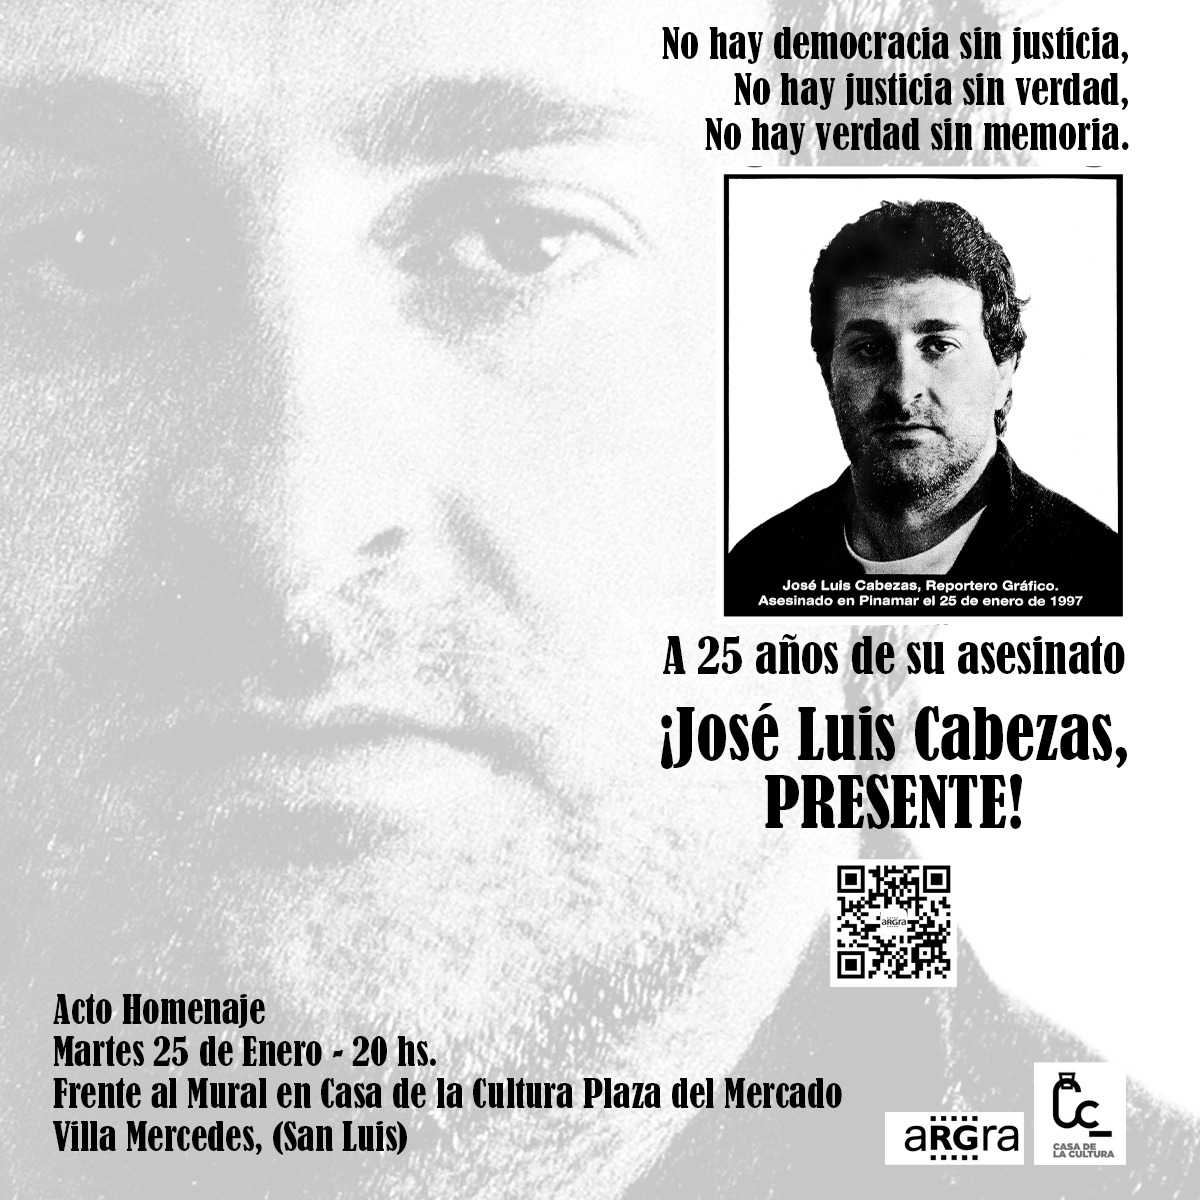 En memoria del periodista asesinado José Luis Cabezas en Argentina